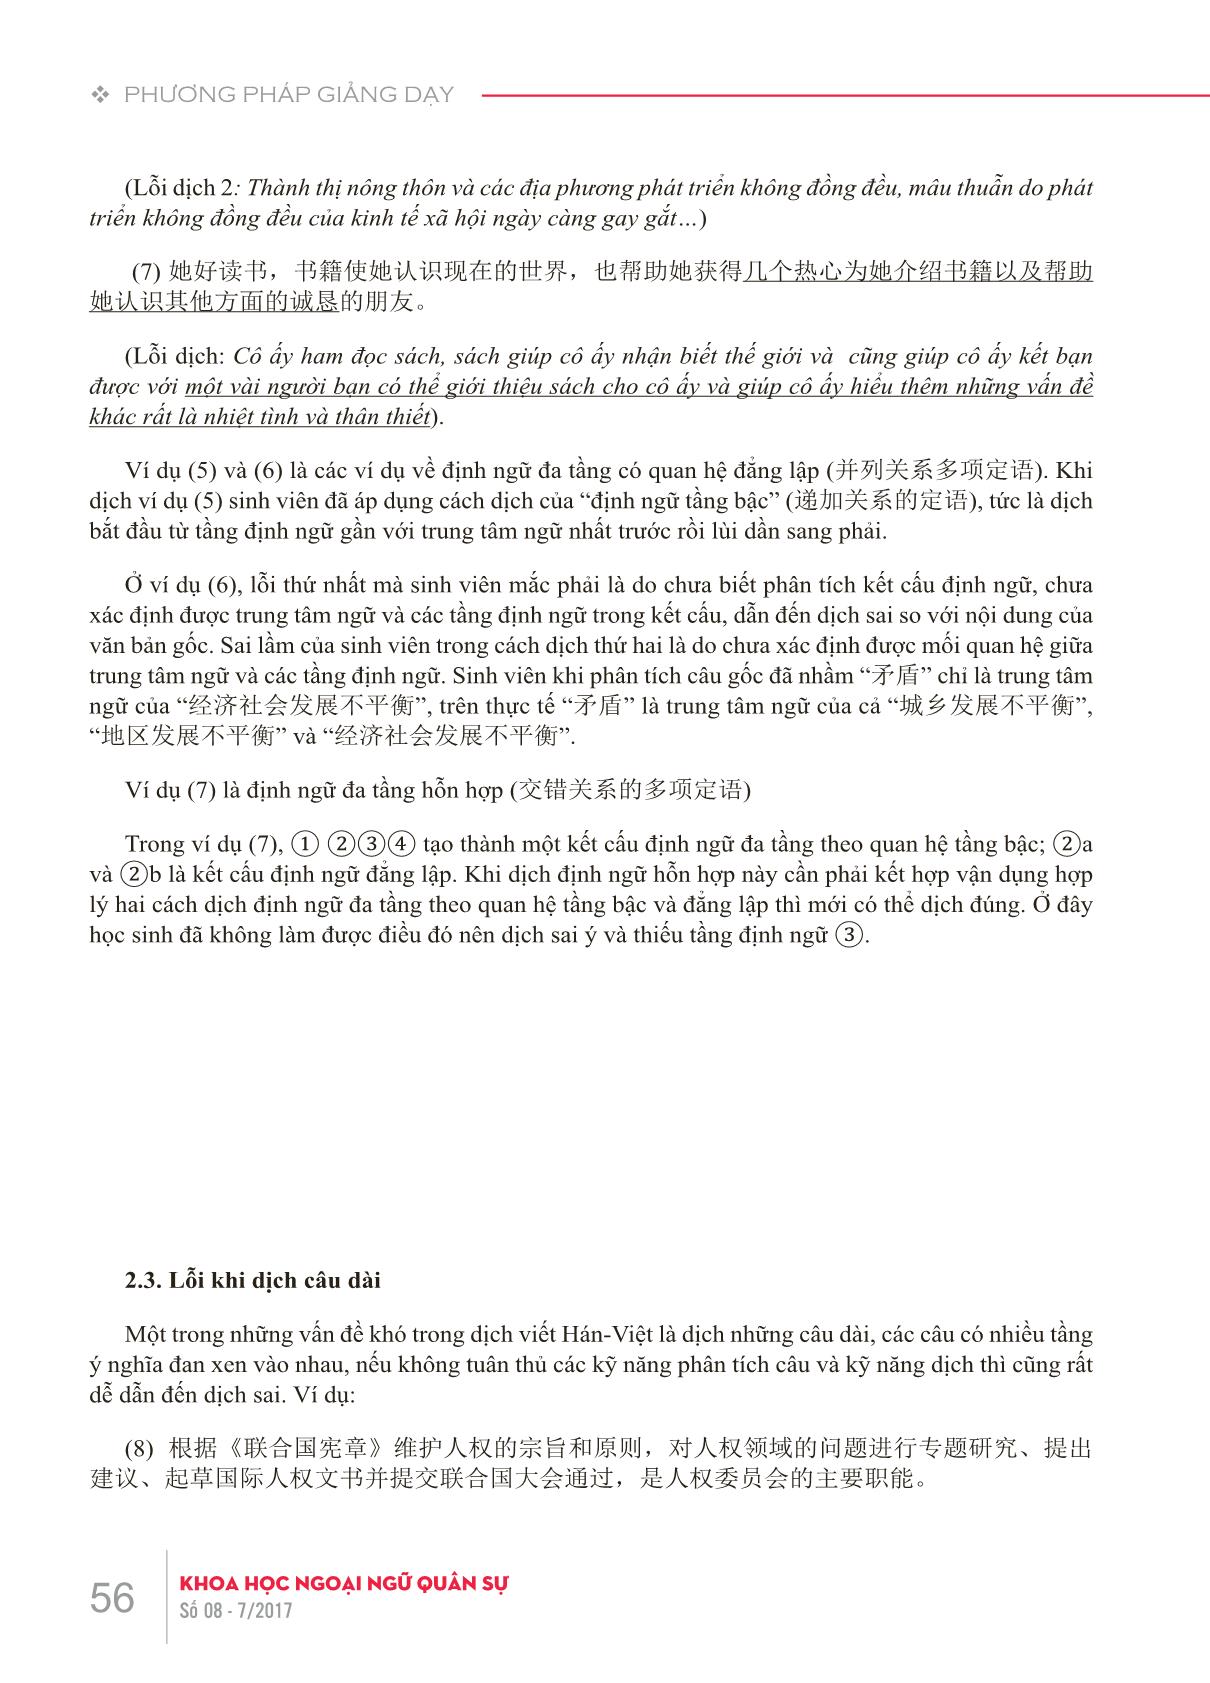 Những lỗi sai thường gặp của sinh viên khi dịch viết Hán-Việt do hạn chế về kiến thức ngôn ngữ và giải pháp trong giảng dạy trang 3